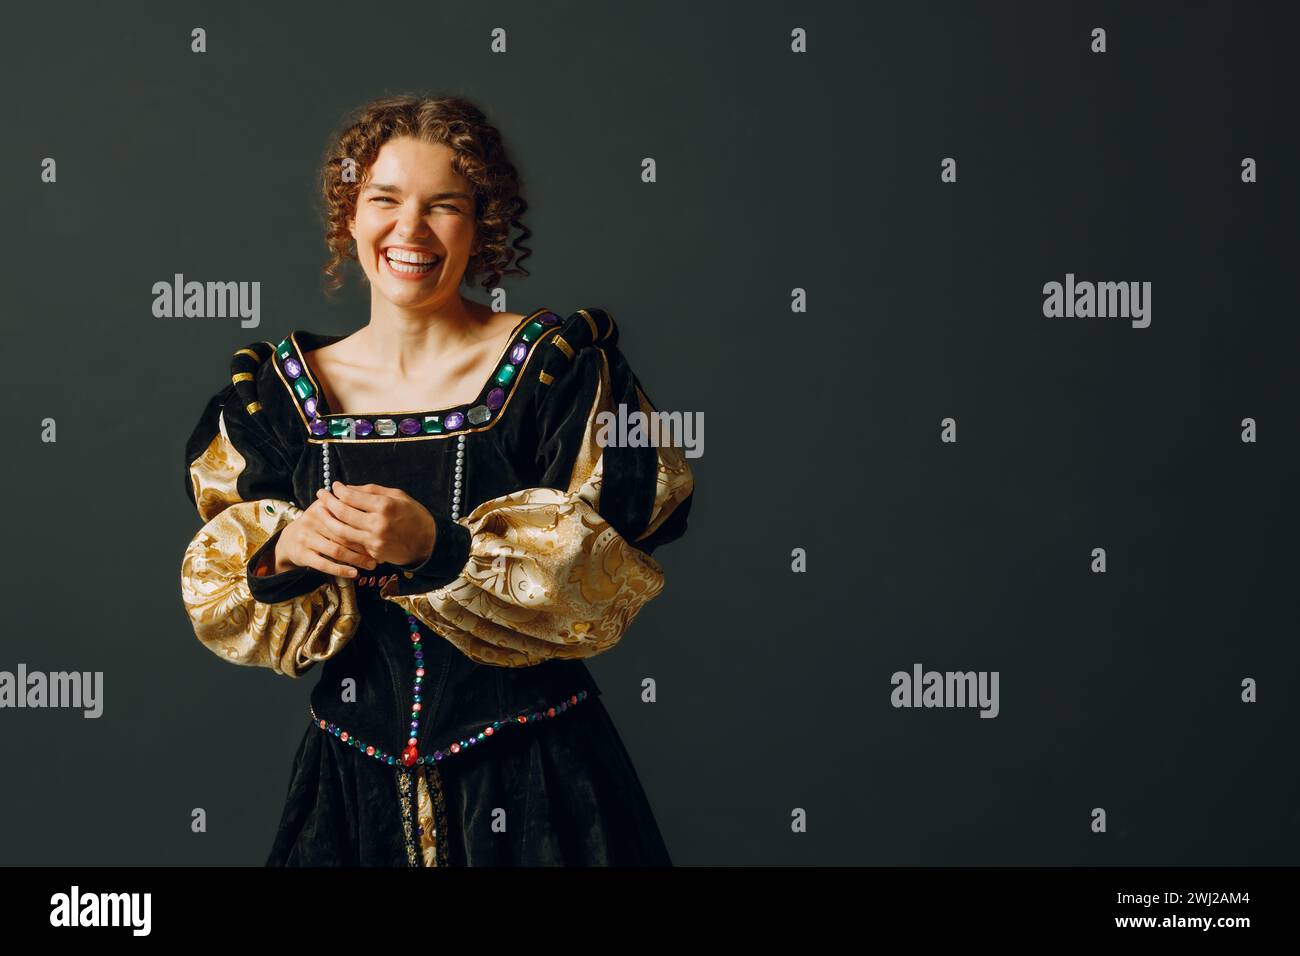 Porträt einer jungen lachenden Frau in einem mittelalterlichen Kleid auf dunklem Hintergrund. Stockfoto